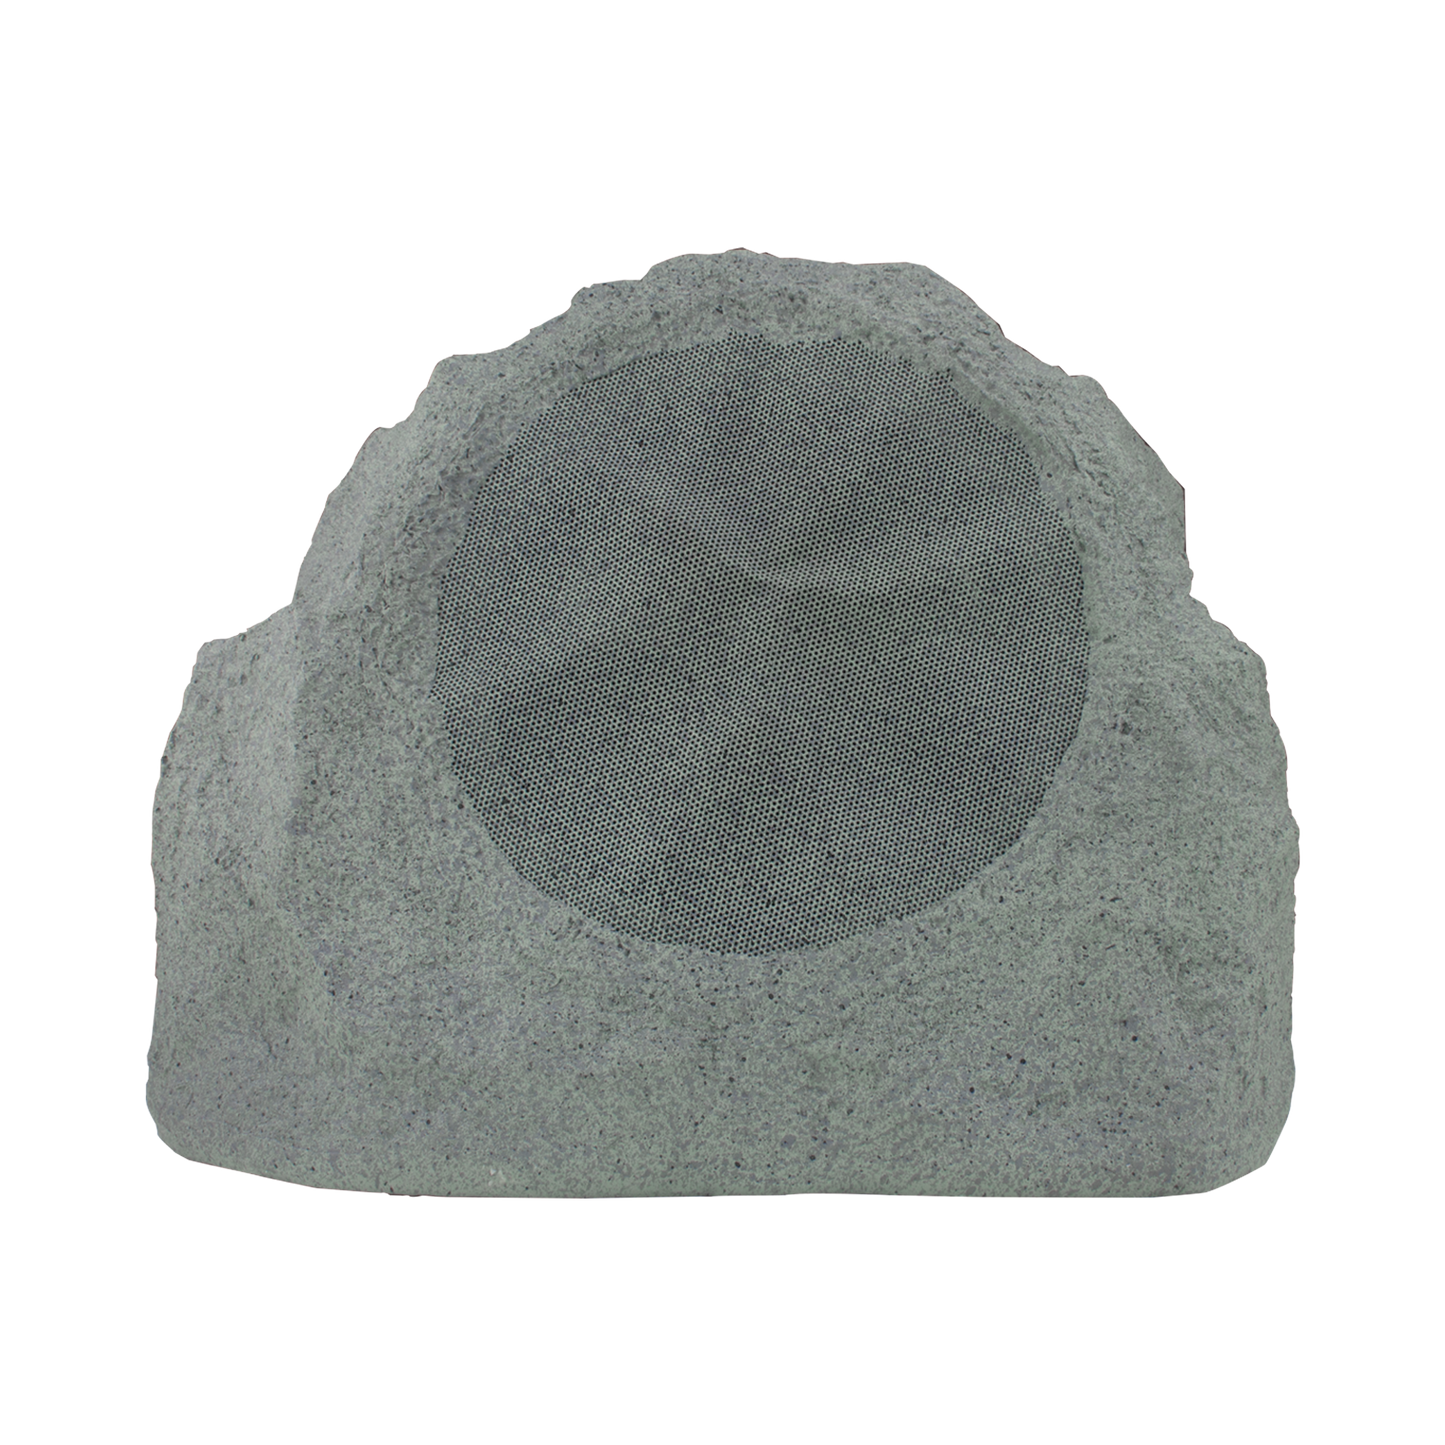 Altavoz Exterior de 2 vías con forma de roca, Woofer de polipropileno de 8 ", Tweeter de titanio de 1", Gris. 5 - 150 W, 8 ohms